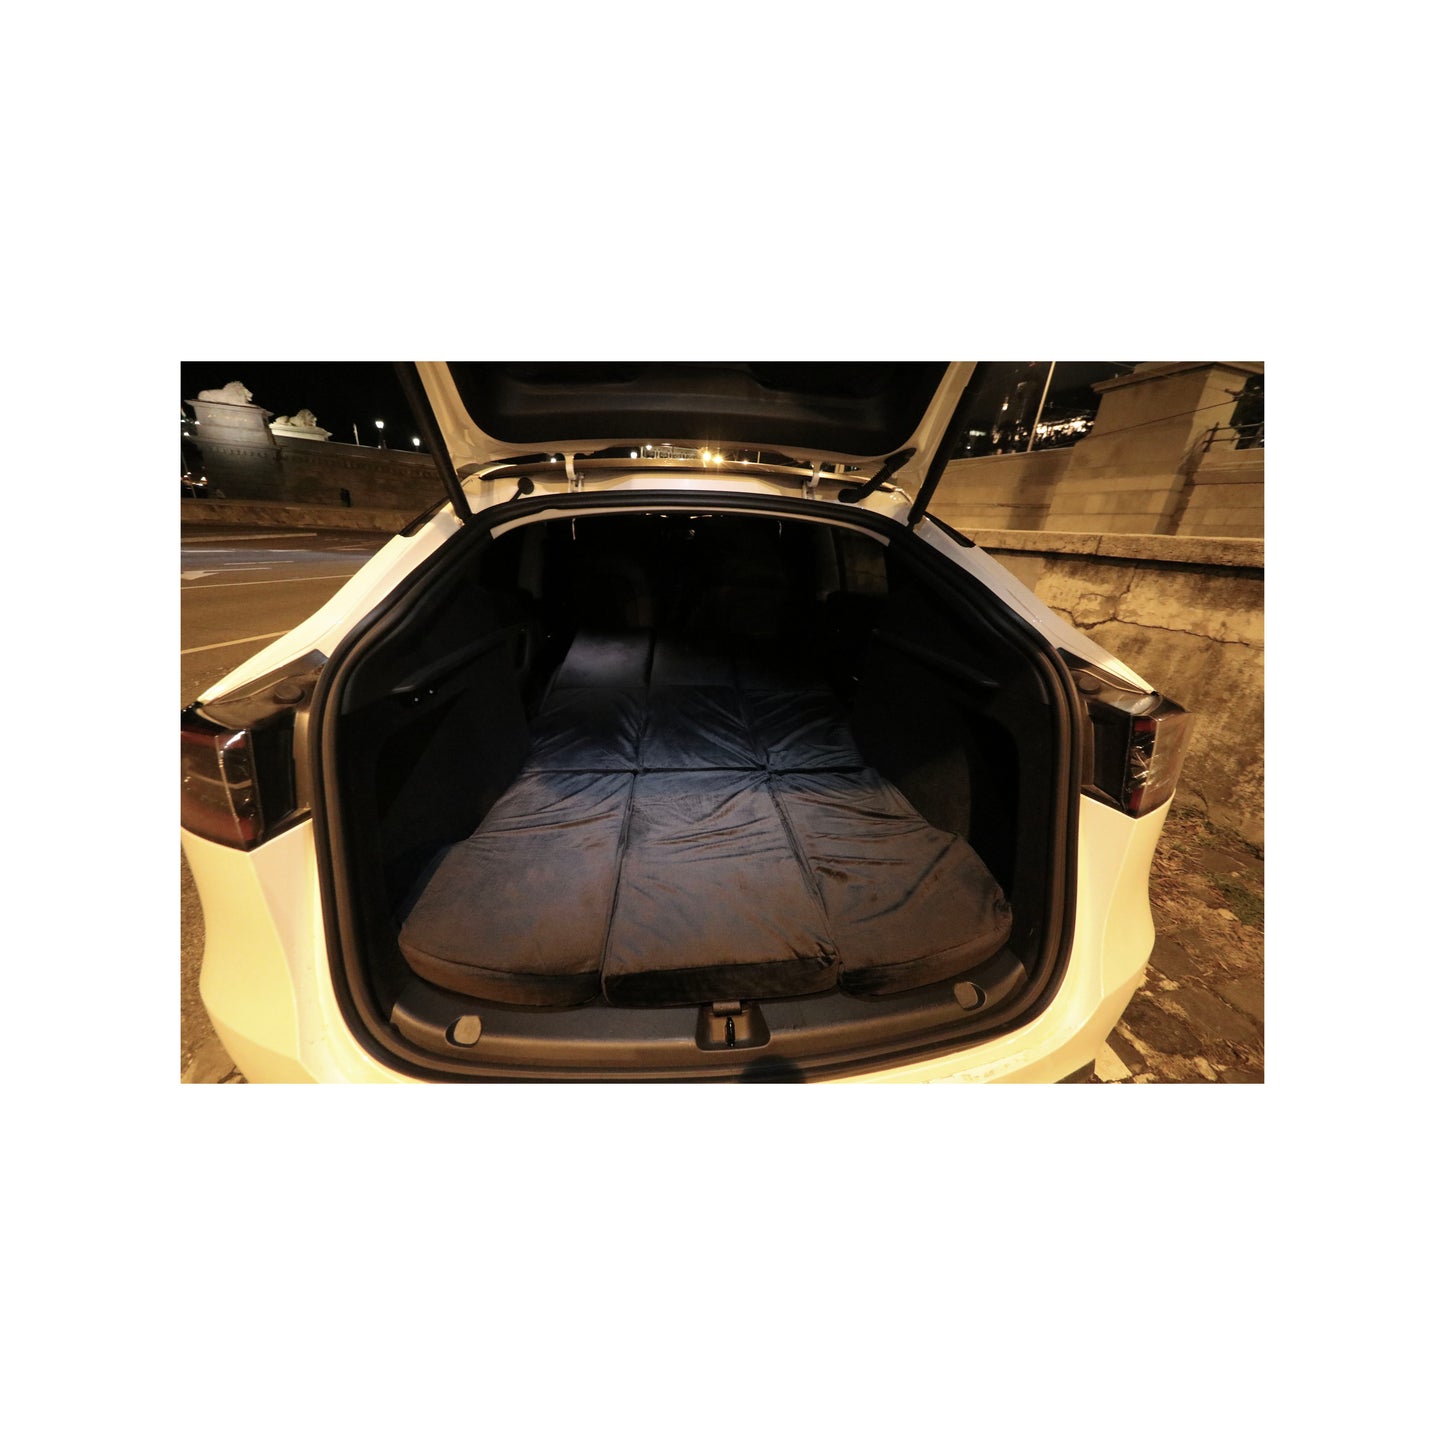 Matrace EV-MATS pro Tesla Model Y s taškou na přepravu je luxusní matrace z paměťové pěny, která perfektně padne do rozměrů vozu Tesla Model Y. Poskytuje dokonalý komfort pro spaní a lze ji uložit do kufru